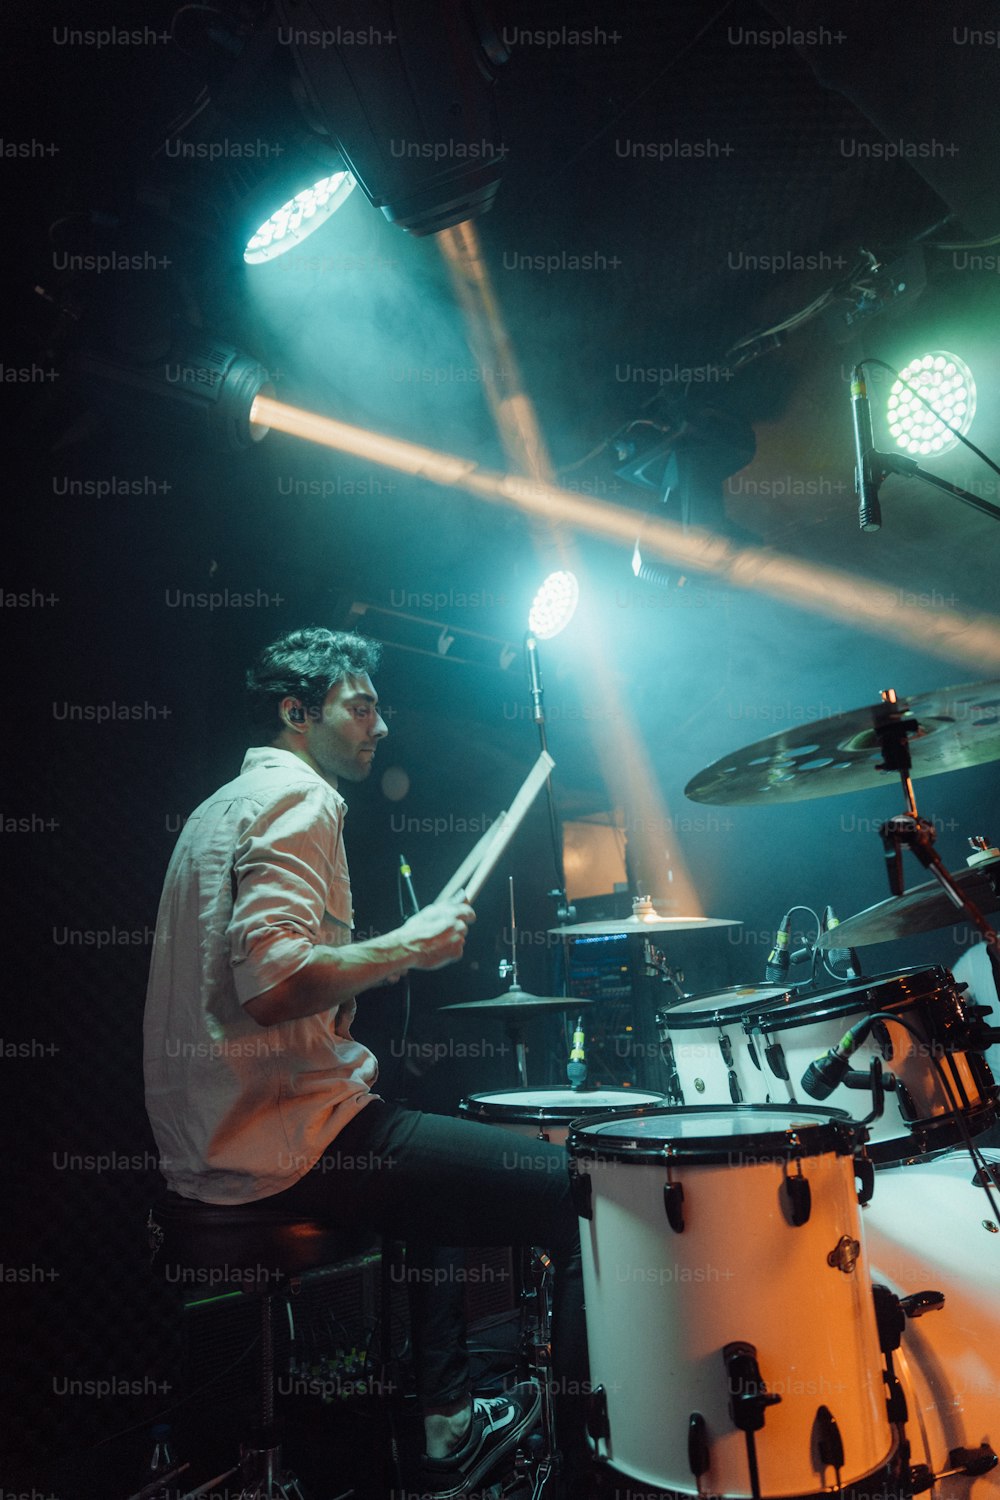 Ein Mann spielt Schlagzeug in einem dunklen Raum